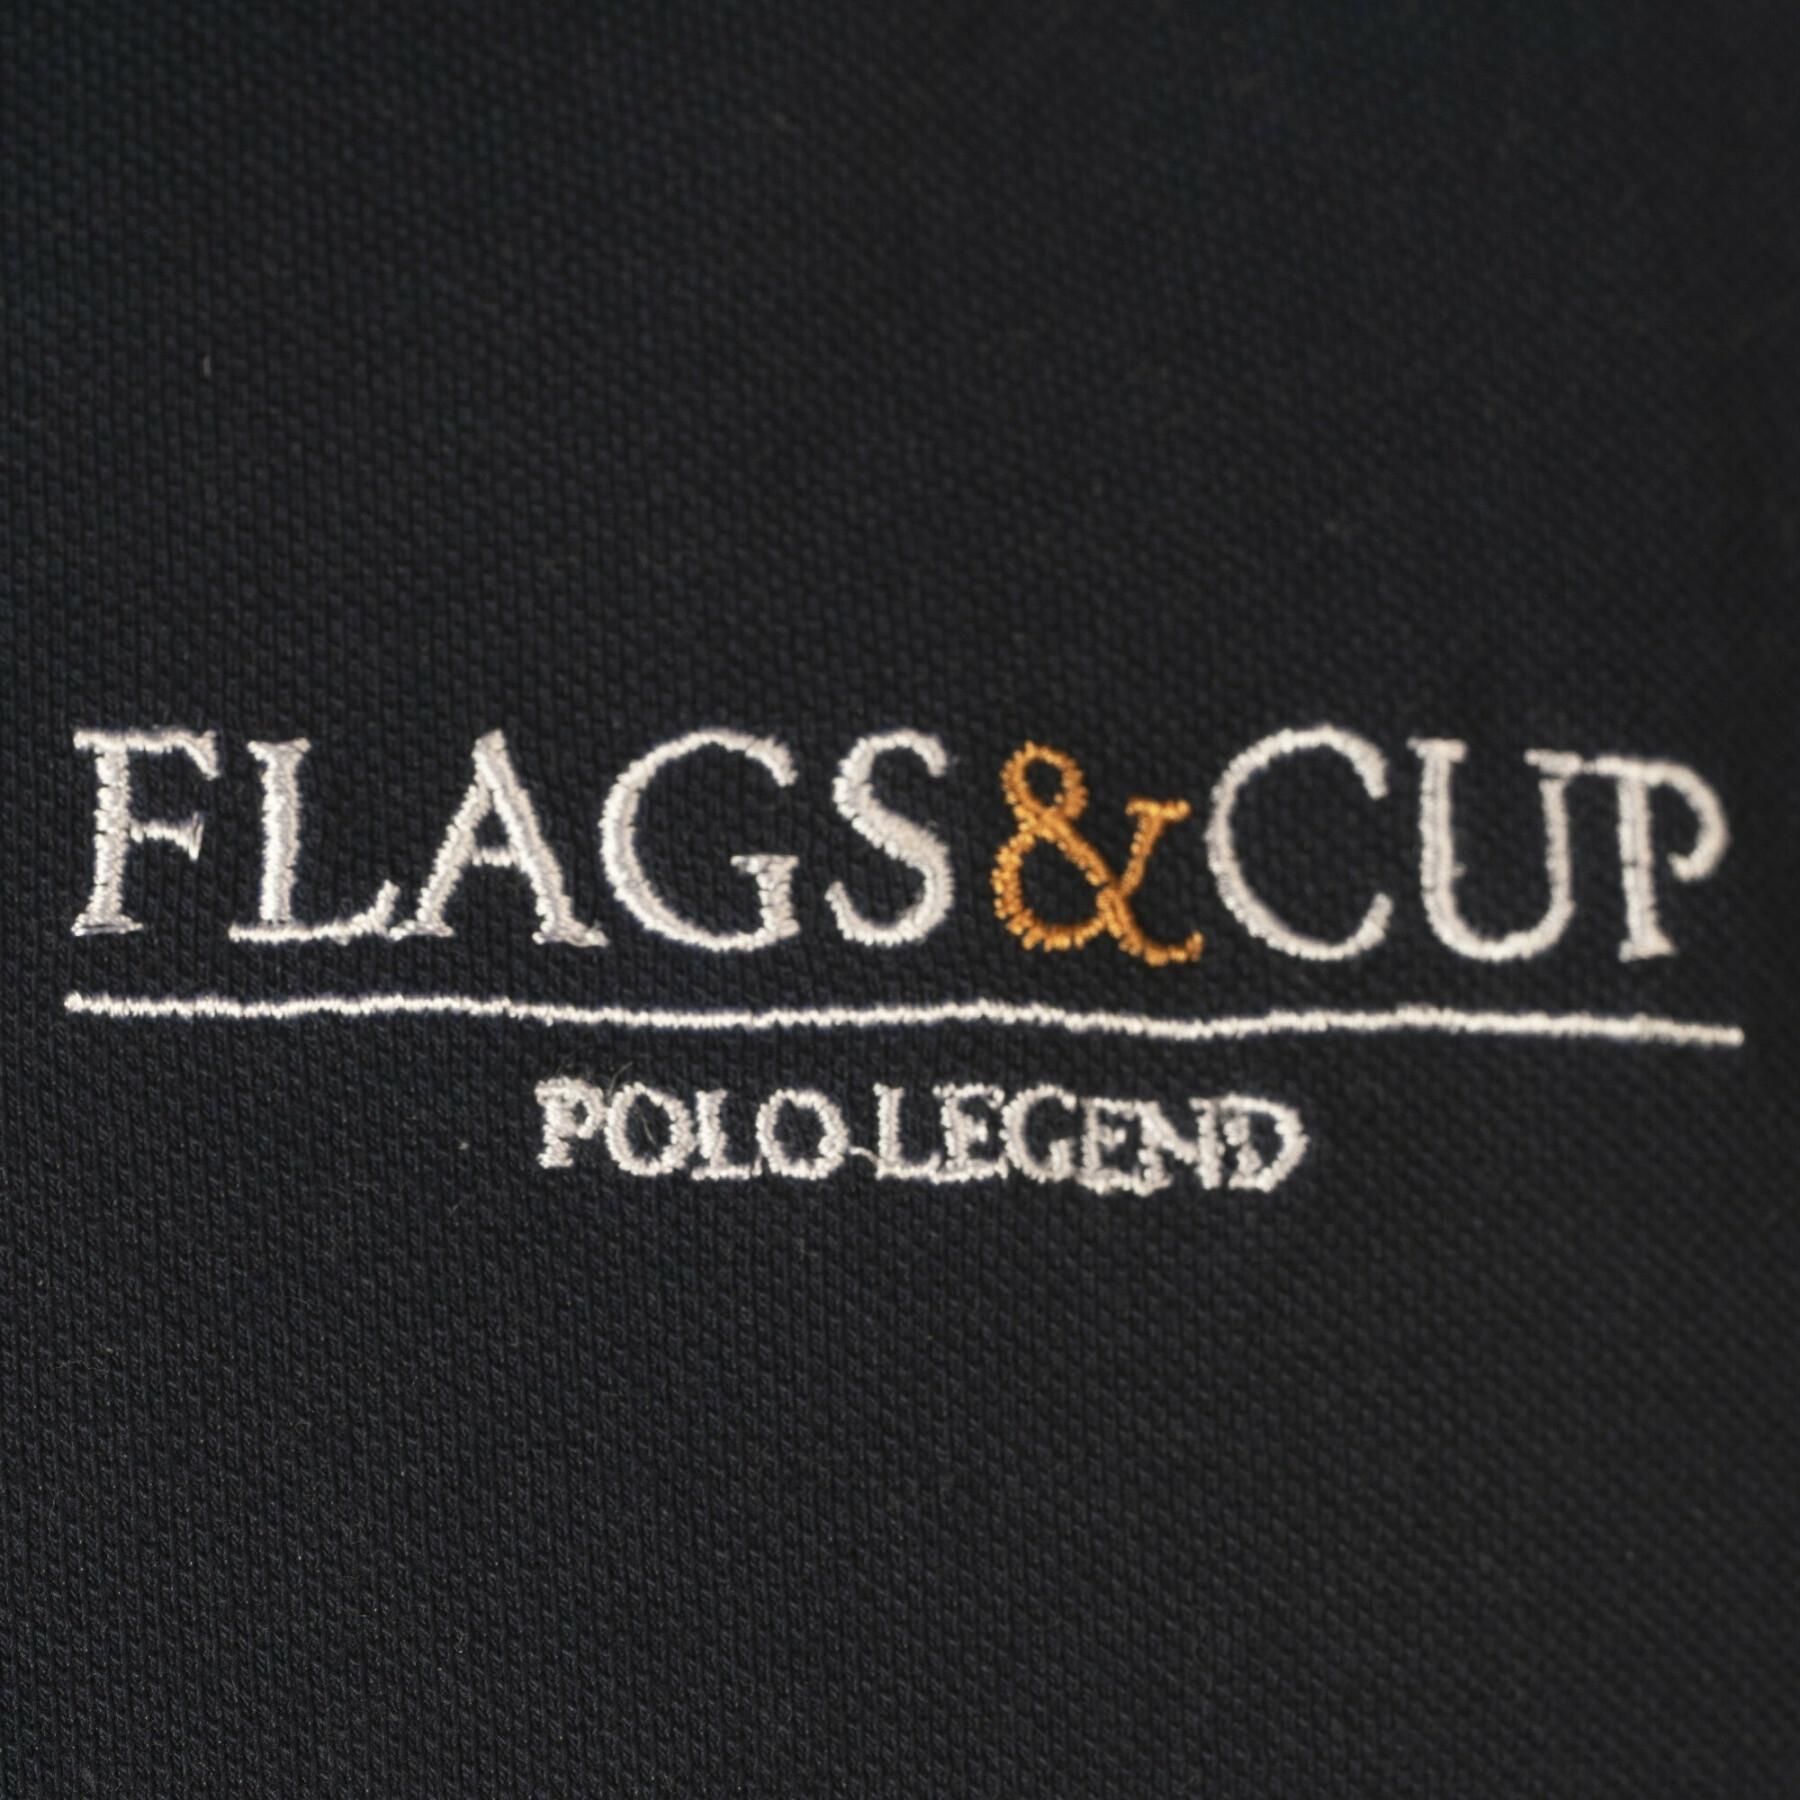 Polo d'équitation Flags&Cup Pico